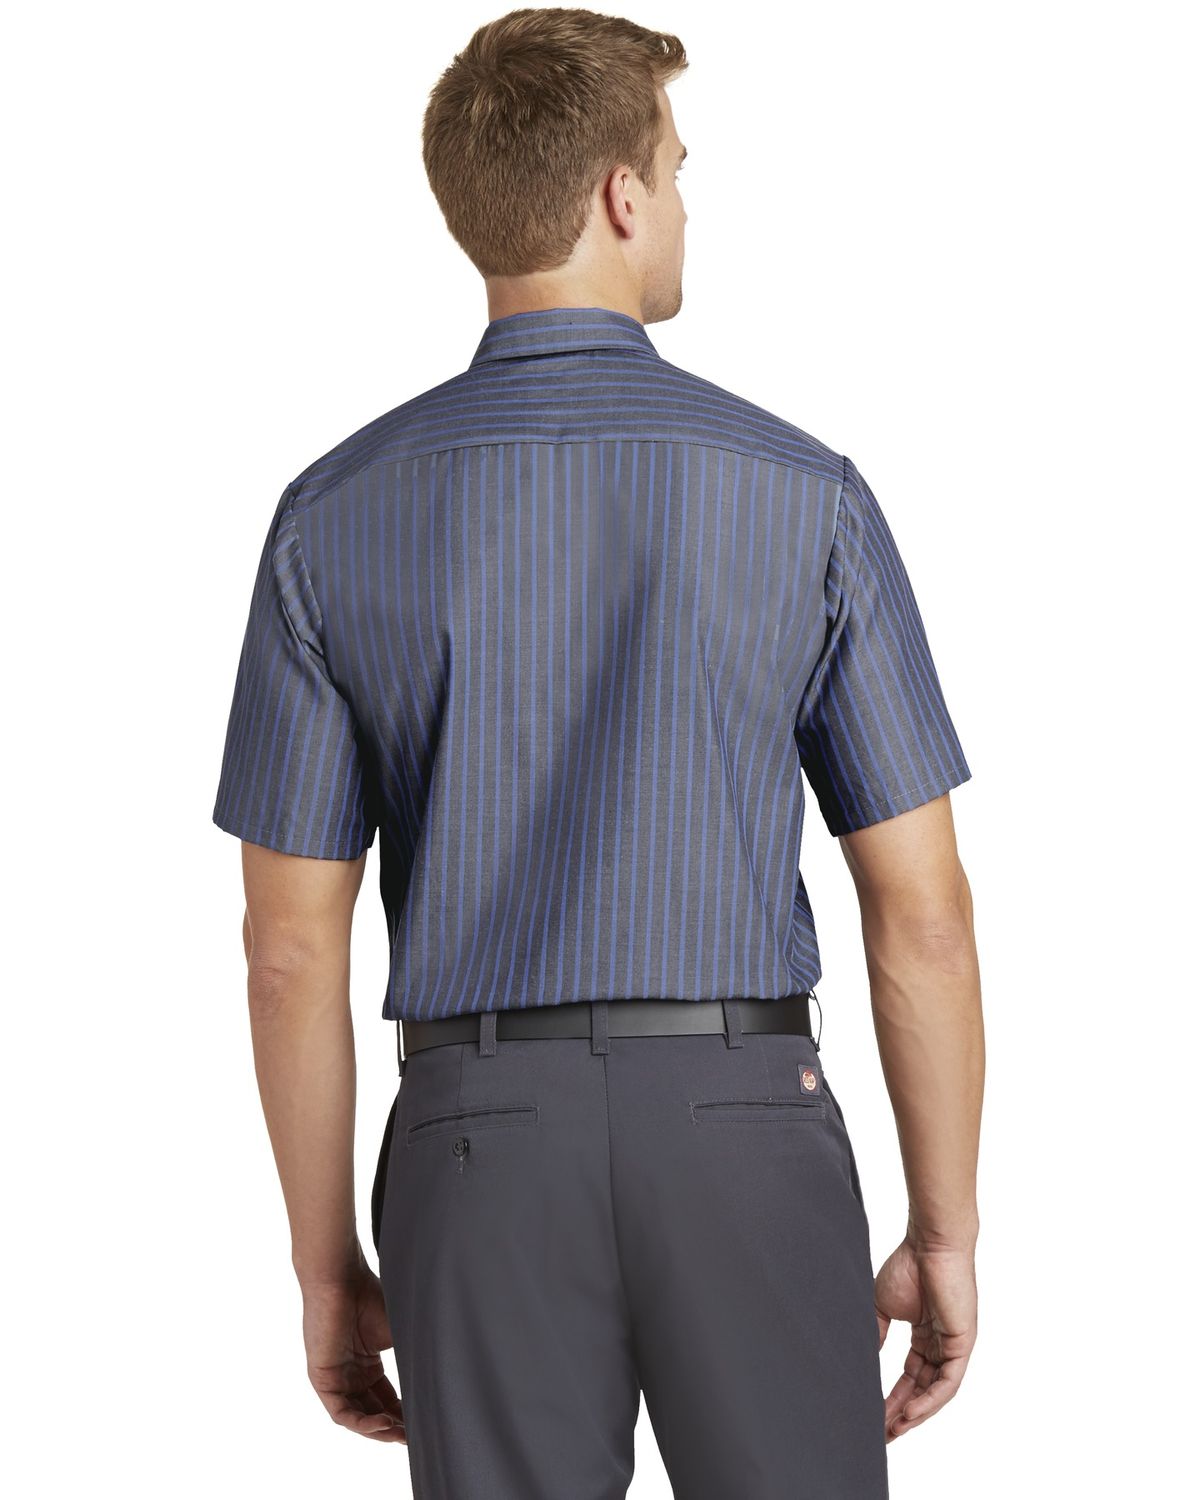 'Red Kap CS20 Short Sleeve Striped Industrial Work Shirt.'